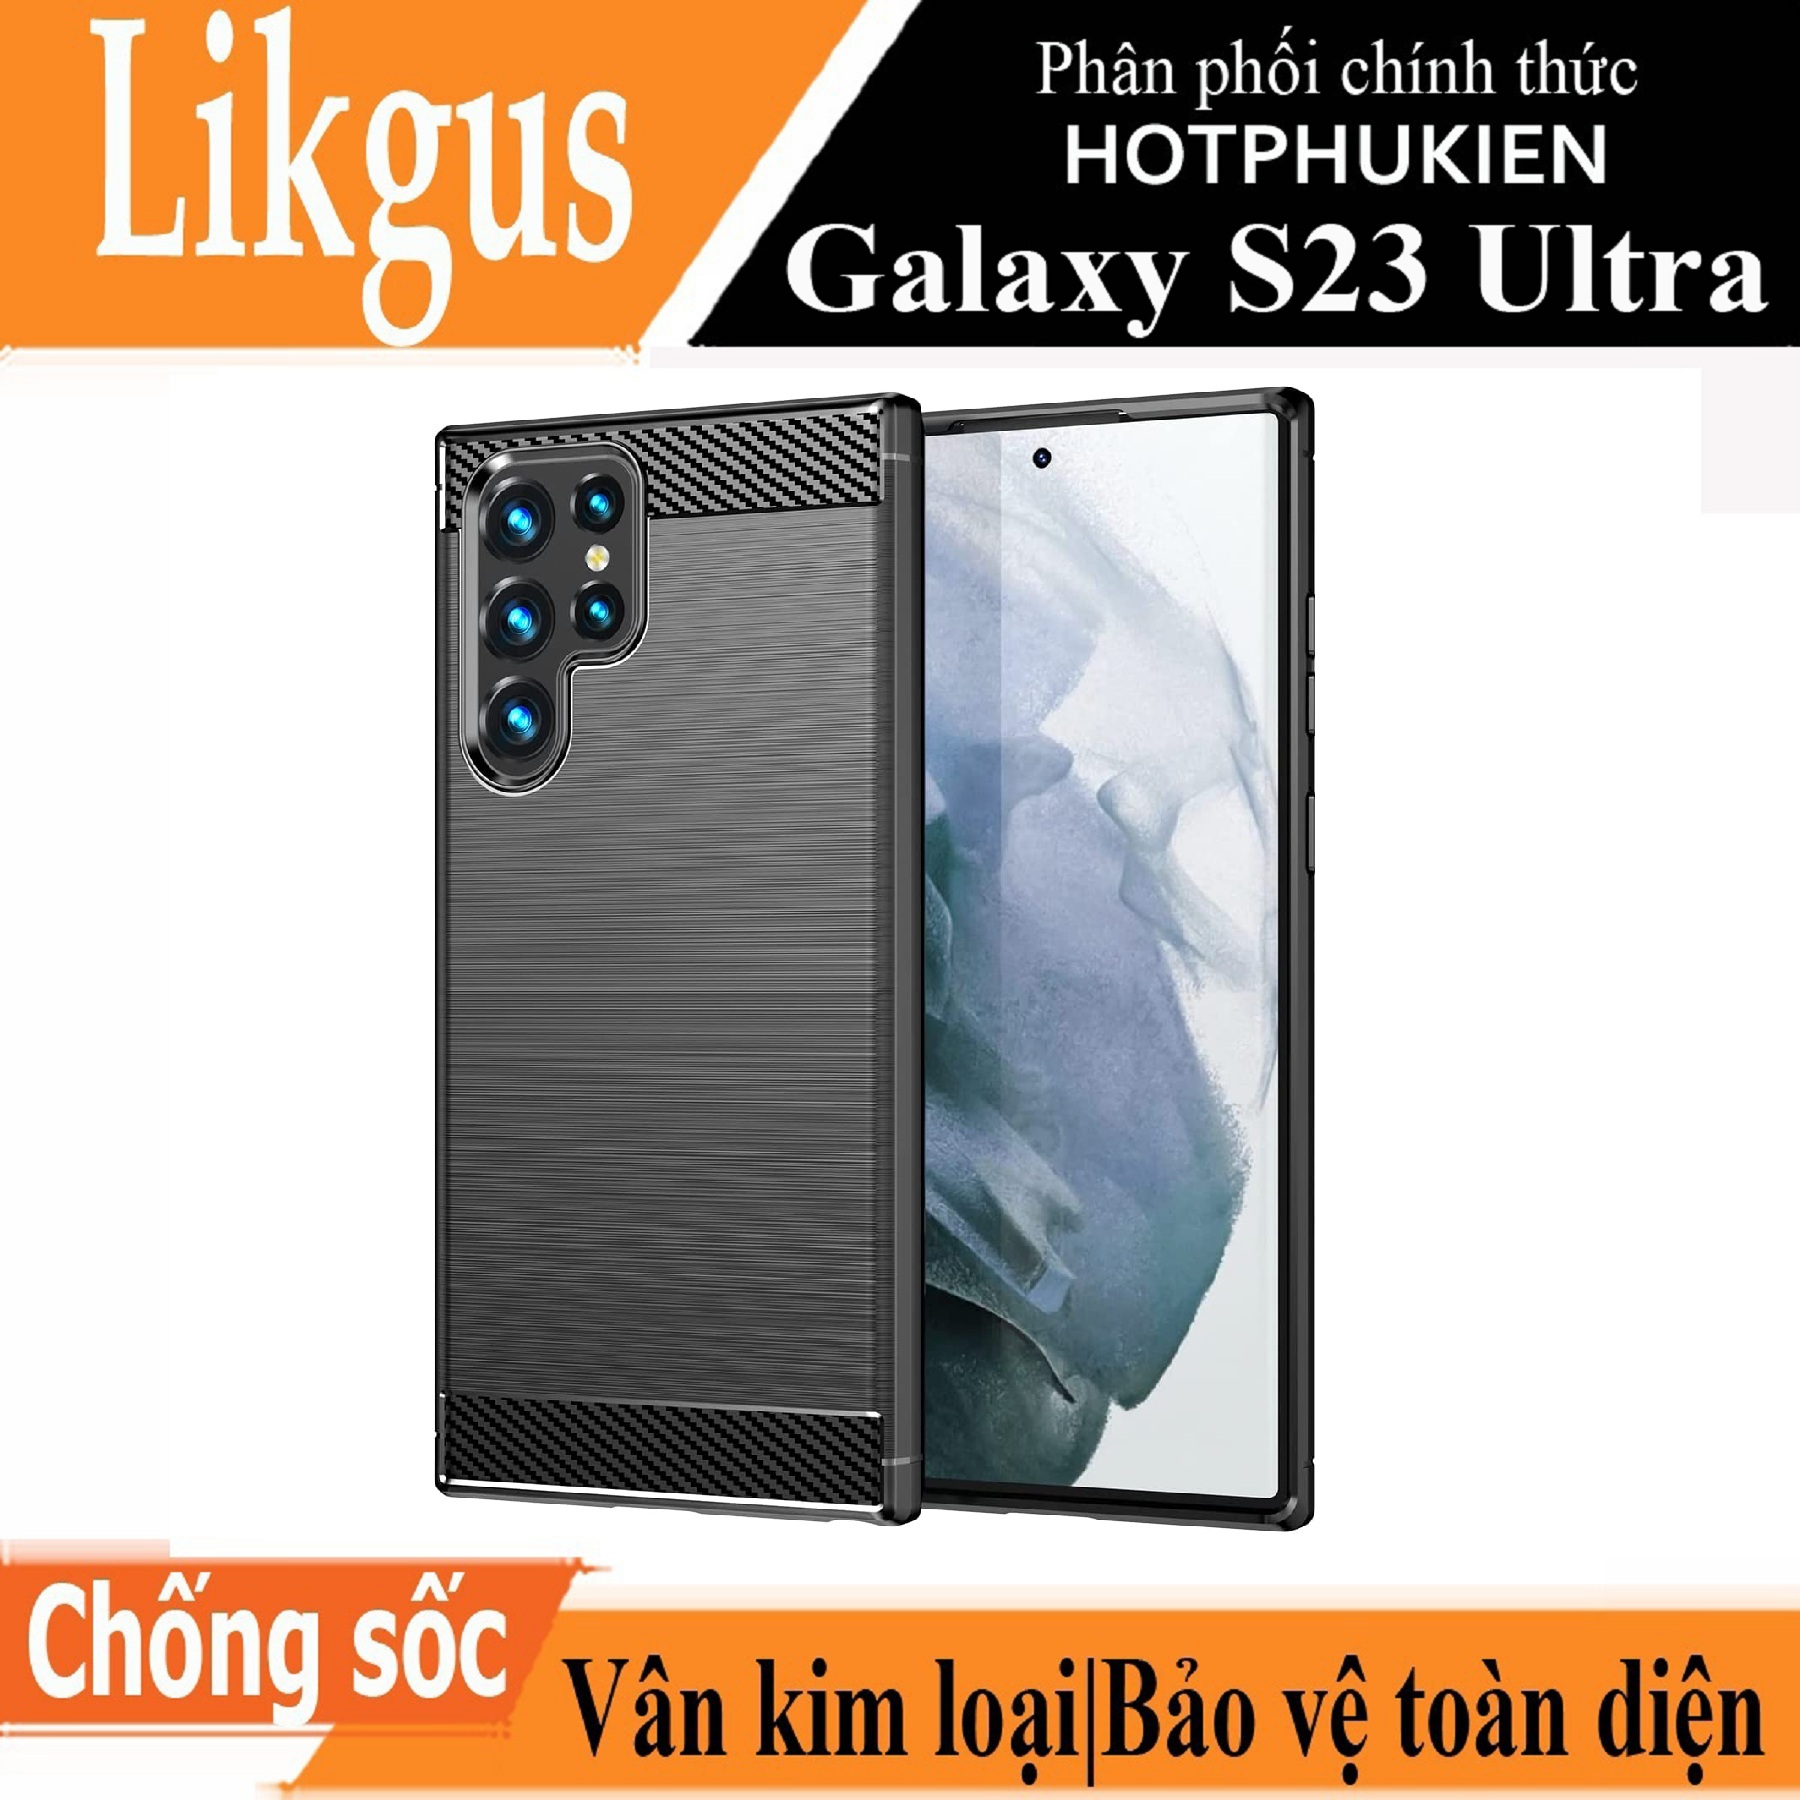 Ốp lưng chống sốc vân kim loại cho Samsung Galaxy S23 Ultra hiệu Likgus